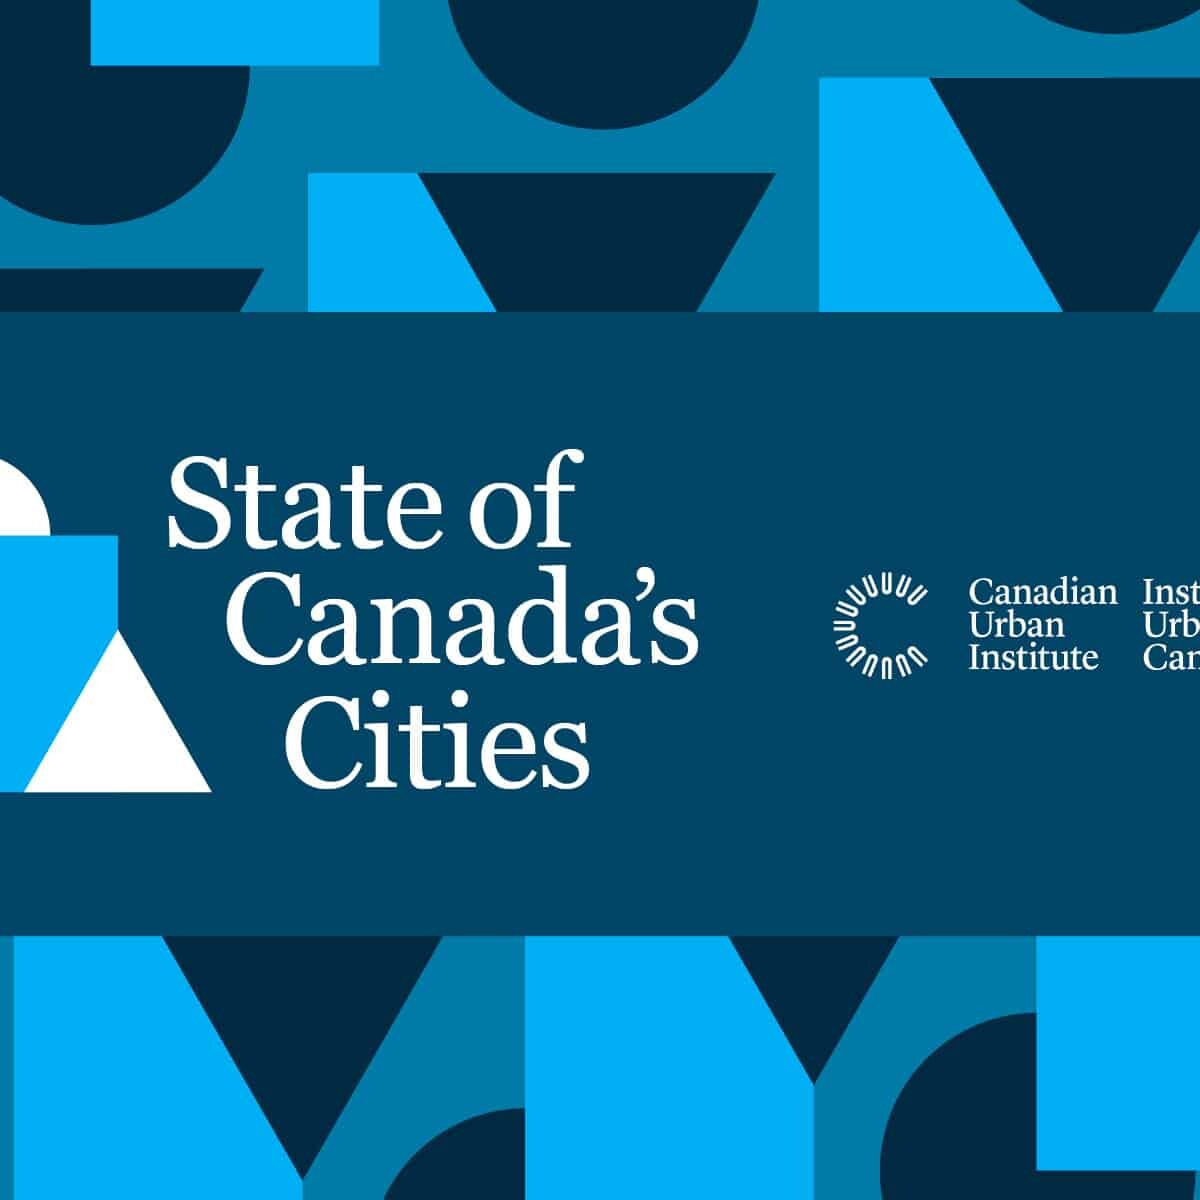 canadian-urban-institute-branding-logo-design